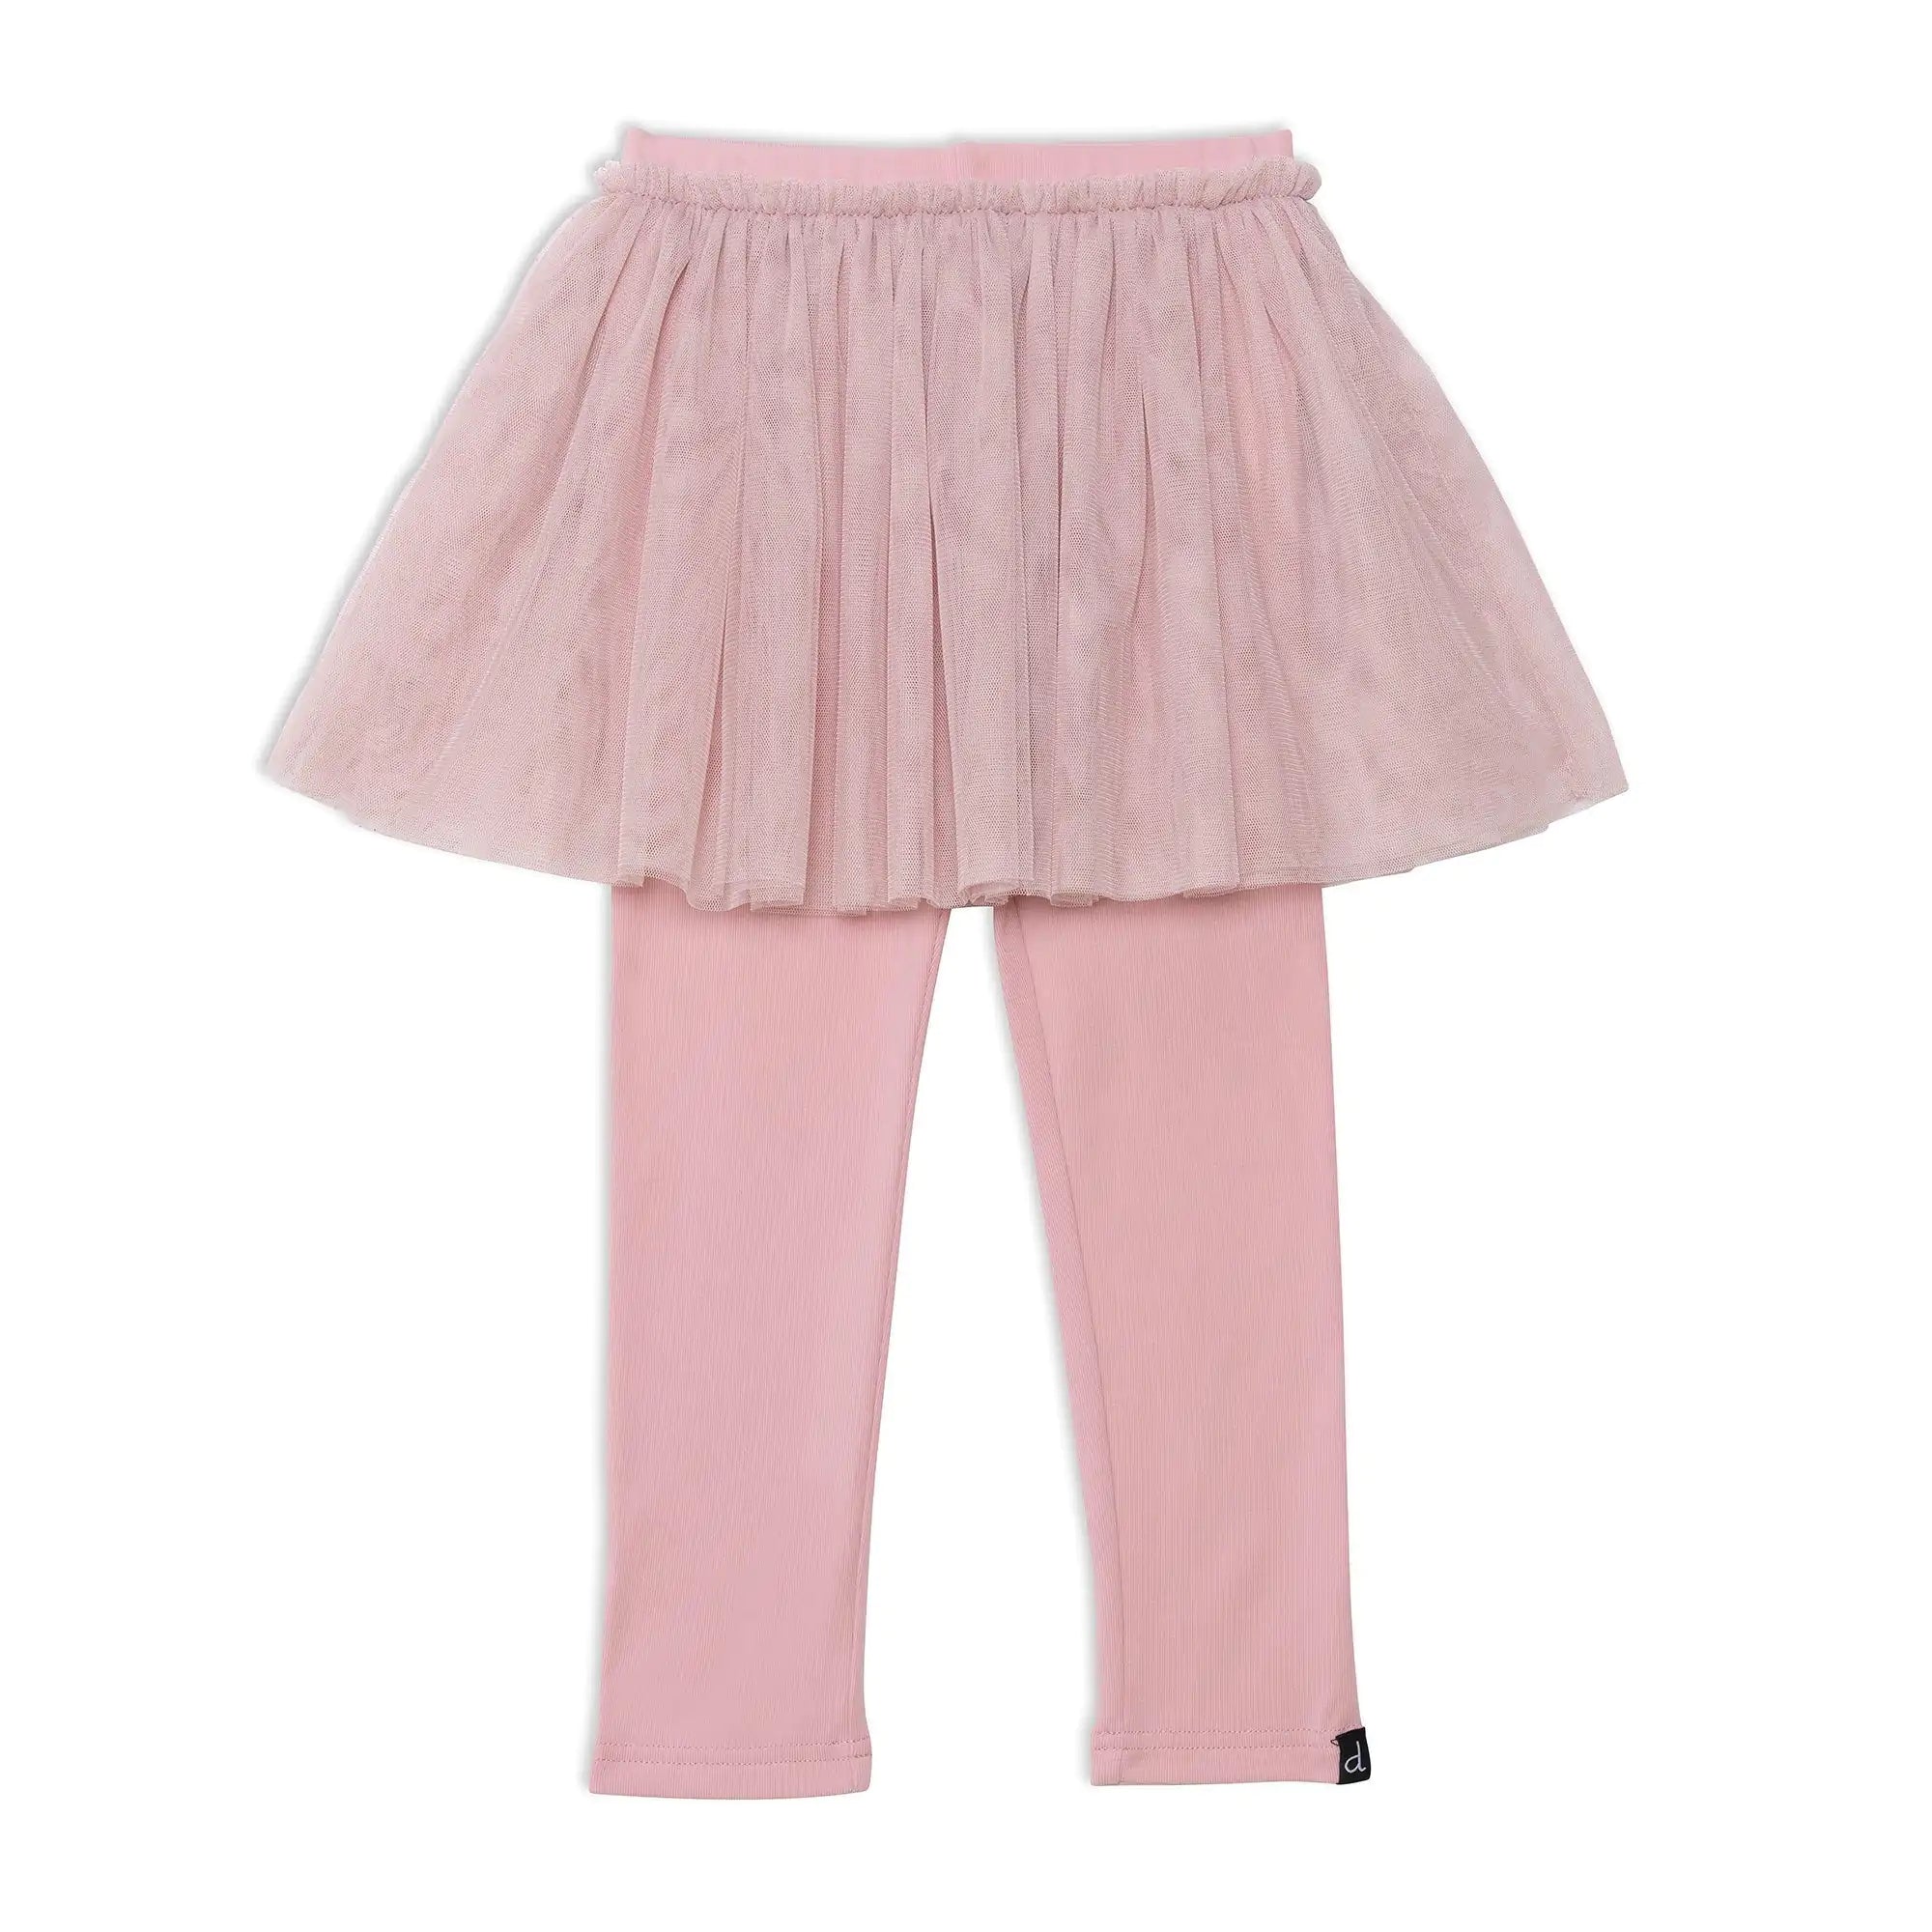 Skirt Legging Light Pink